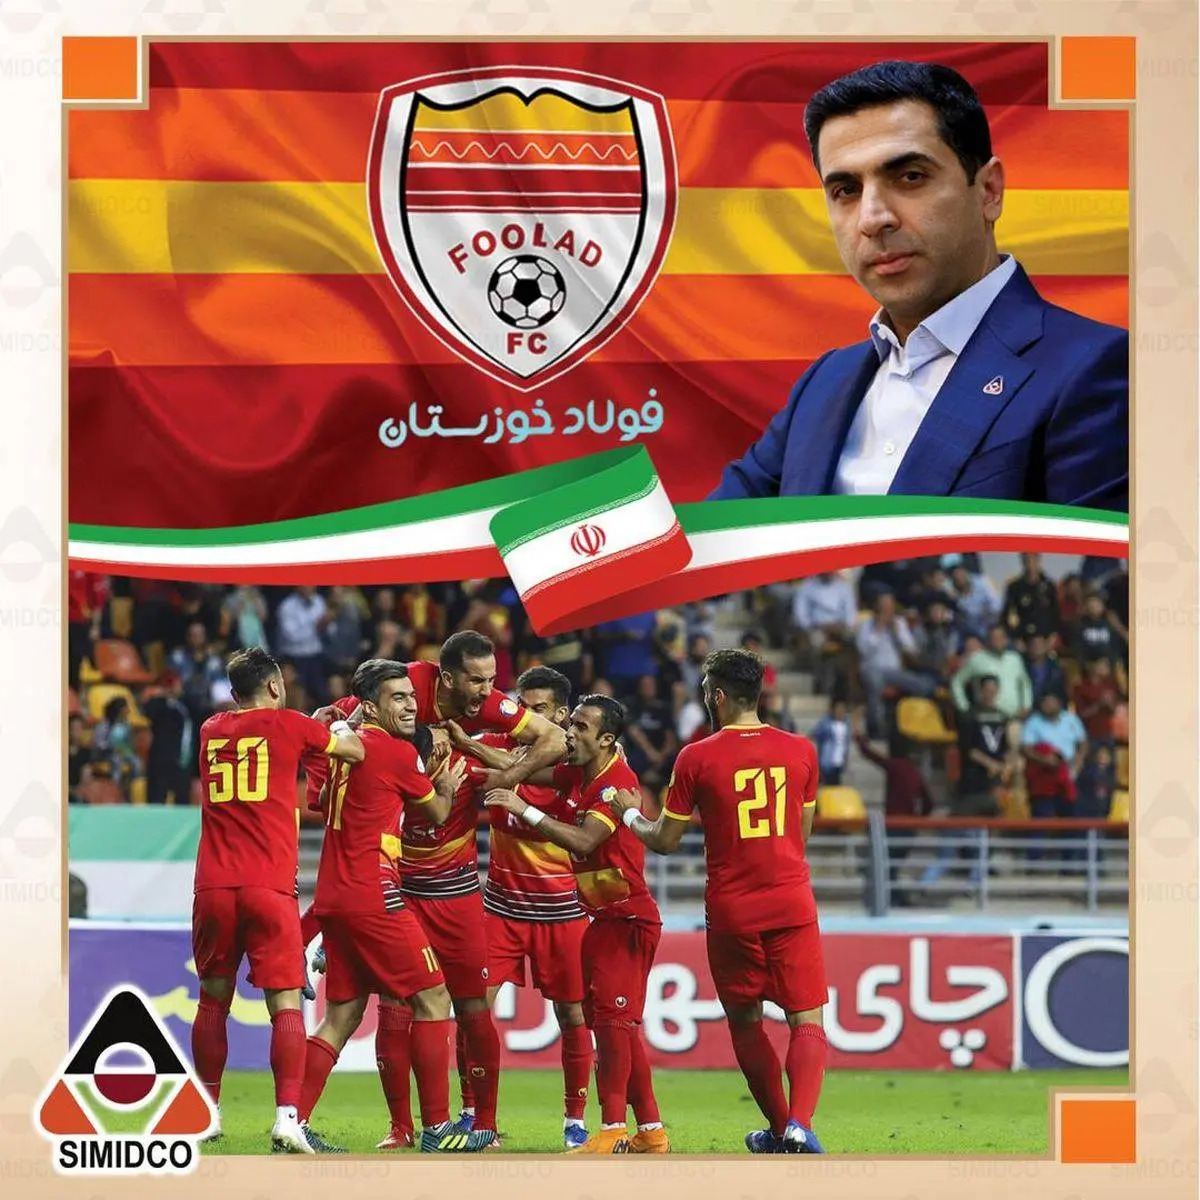 پیام تبریک مدیرعامل شرکت سیمیدکو بمناسبت صعود تیم فوتبال فولاد خوزستان به جام‌باشگاههای آسیا